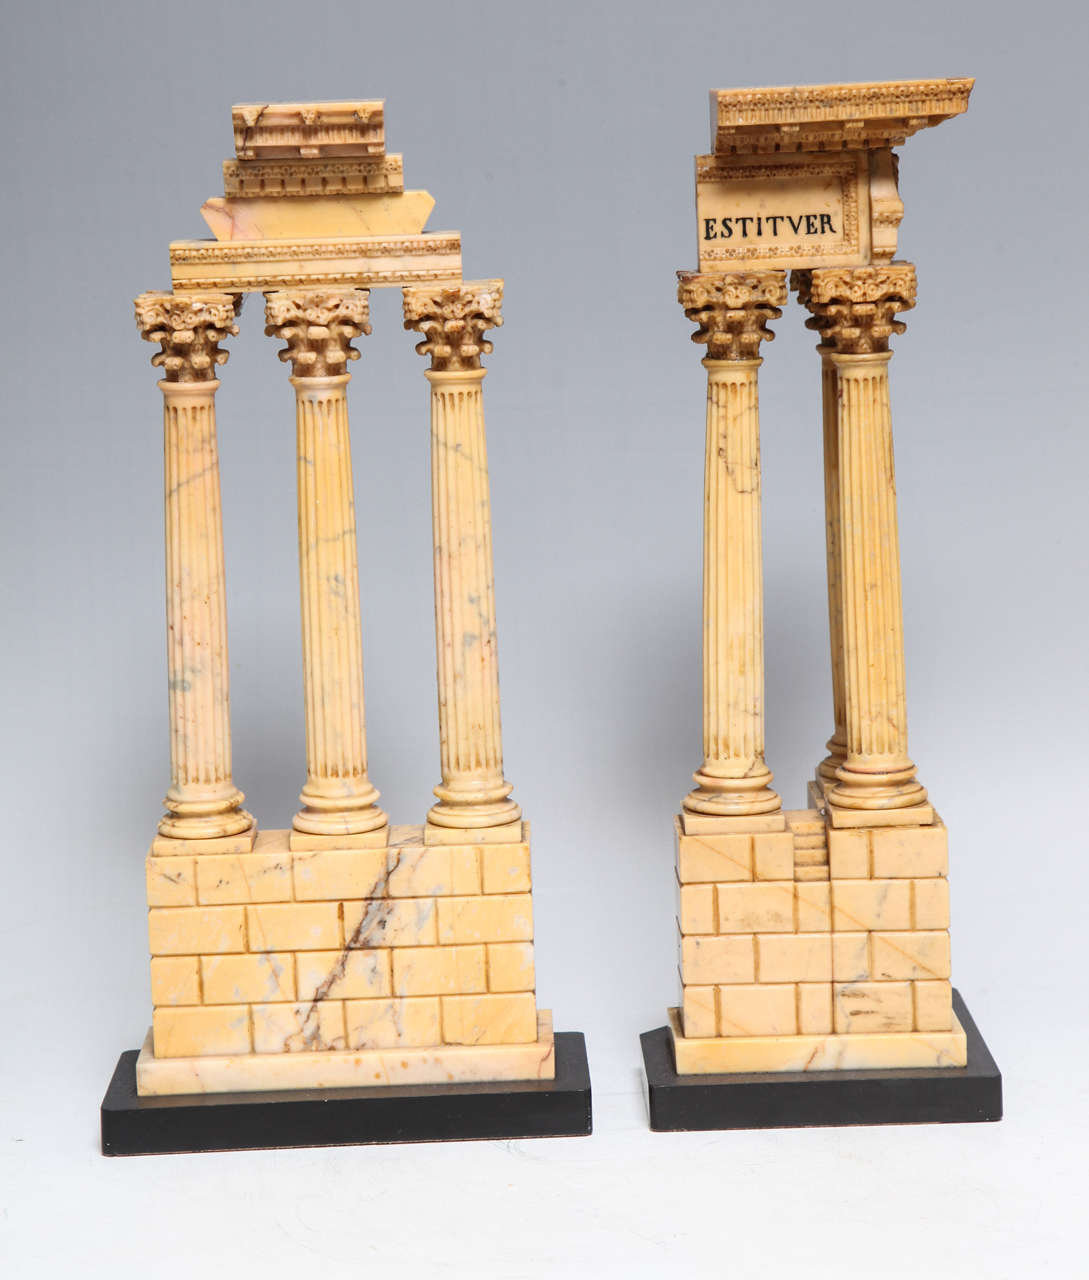 Ein sehr feines und frühes Paar römischer neoklassizistischer Periode Grand Tour Siena Marmor Modelle des Tempels von Castor und Pollux und der Tempel des Vespasian, frühen 1800's Italienisch.

Im 18. und 19. Jahrhundert galt die Ausbildung eines